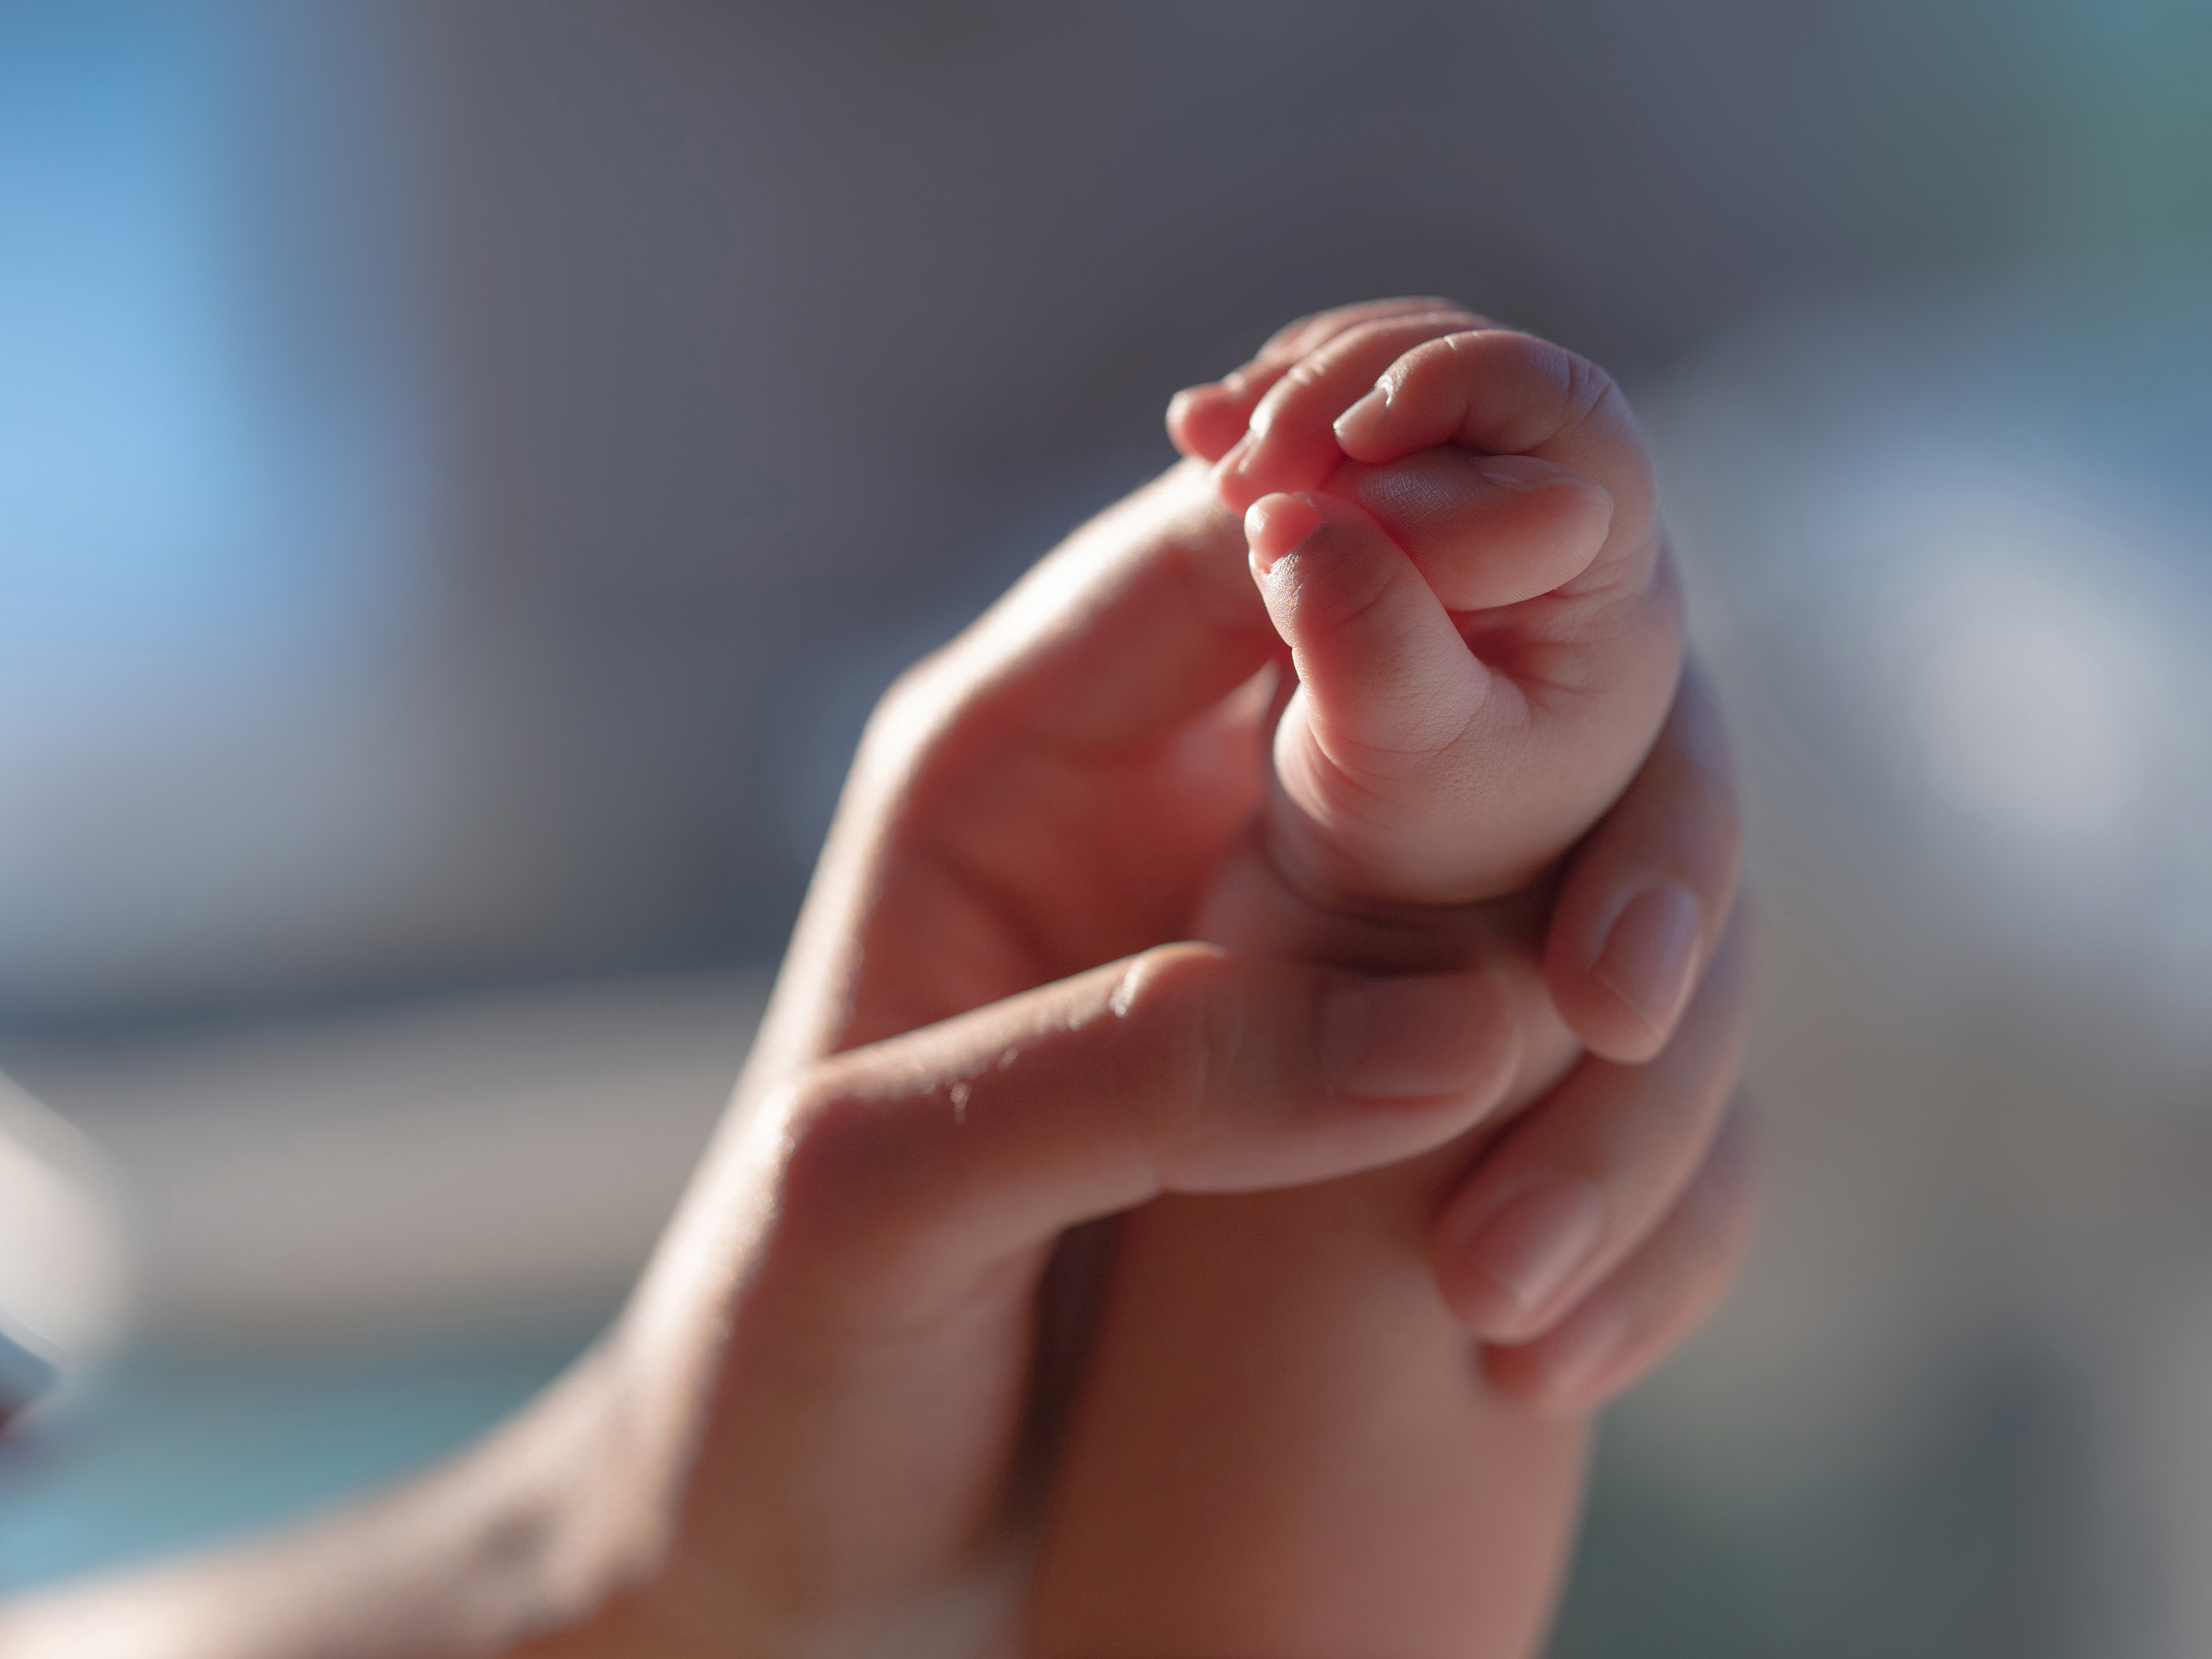 La mort inattendue du nourrisson correspond au décès brutal d’un enfant de moins de 1 an jusqu’alors bien portant. © torwaiphoto, Adobe Stock